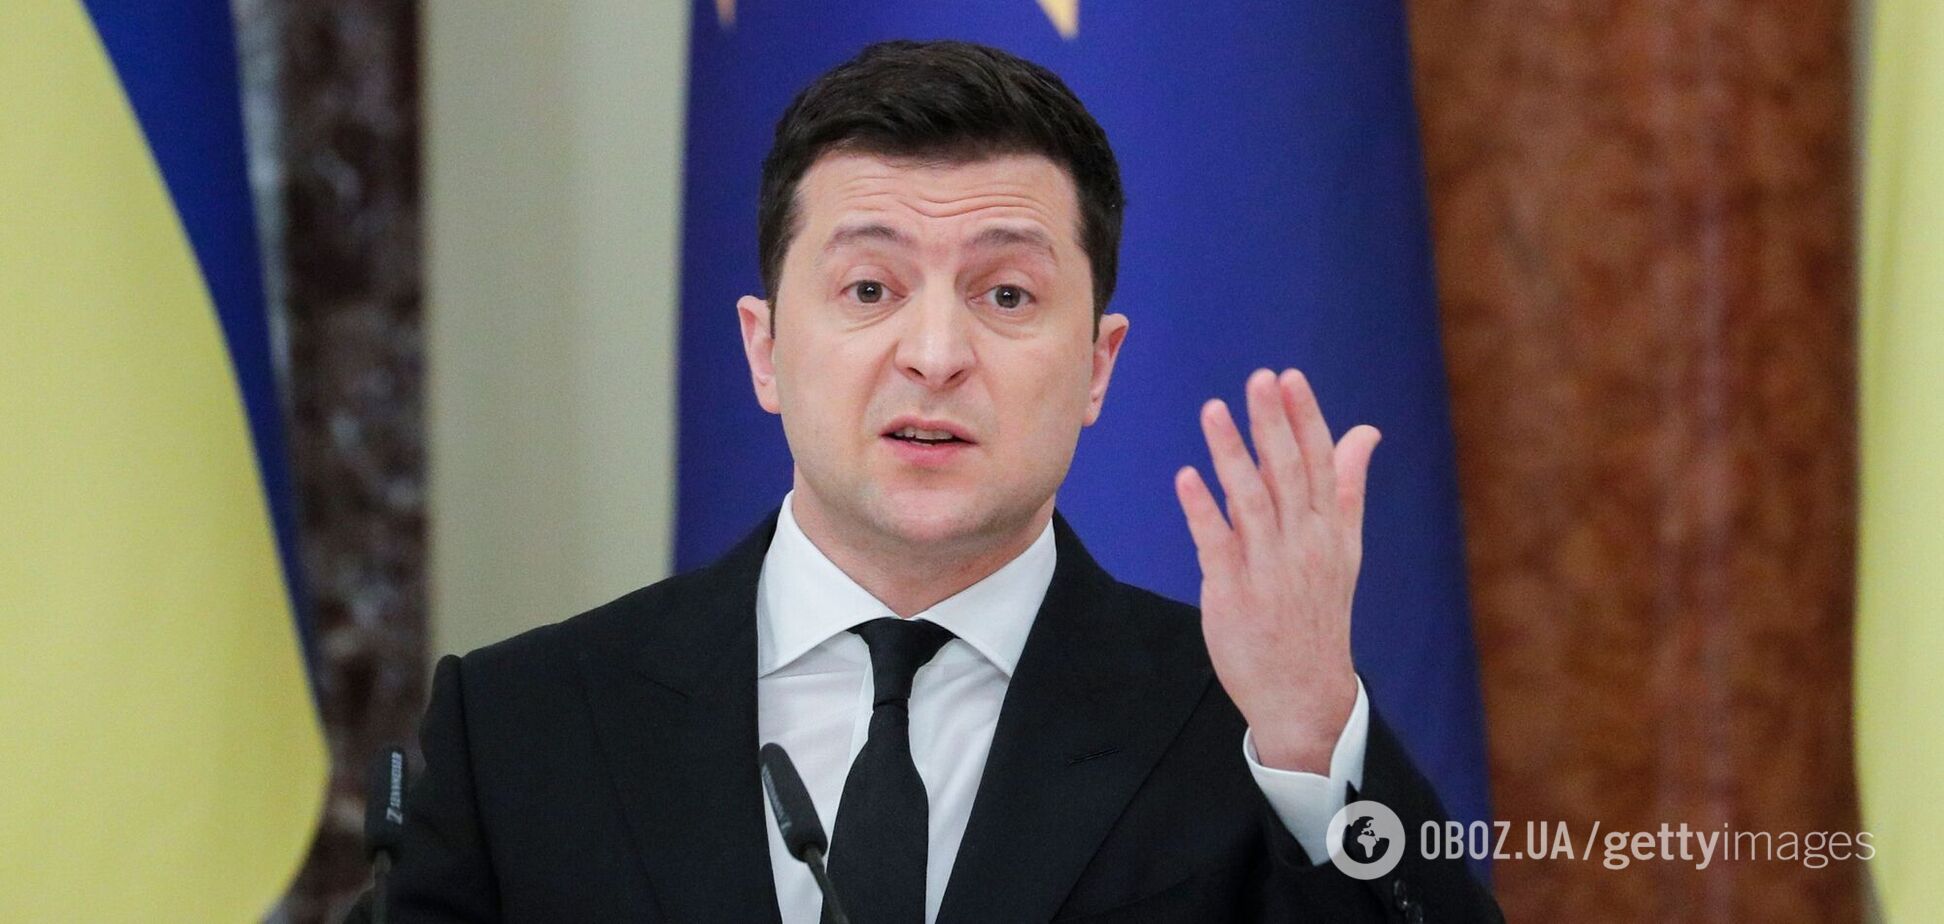 Зеленский заявил о чистке 'слуг' и указал, как надо голосовать в Раде. Видео